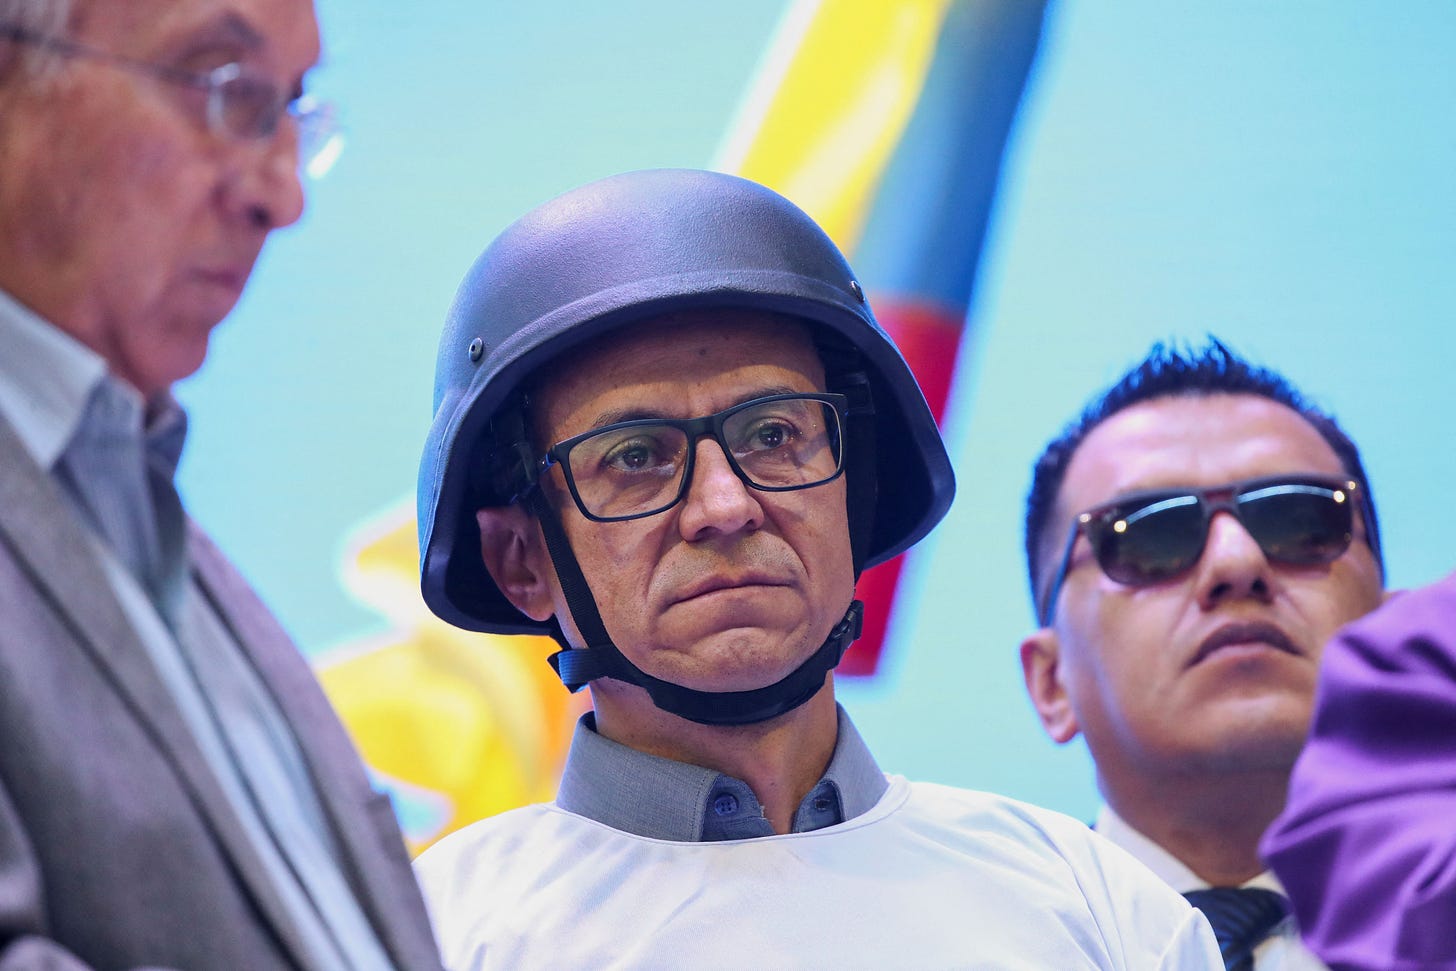 Christian Zurita debe utilizar casco y chaleco antibalas en cada aparición pública. (REUTERS/Henry Romero)